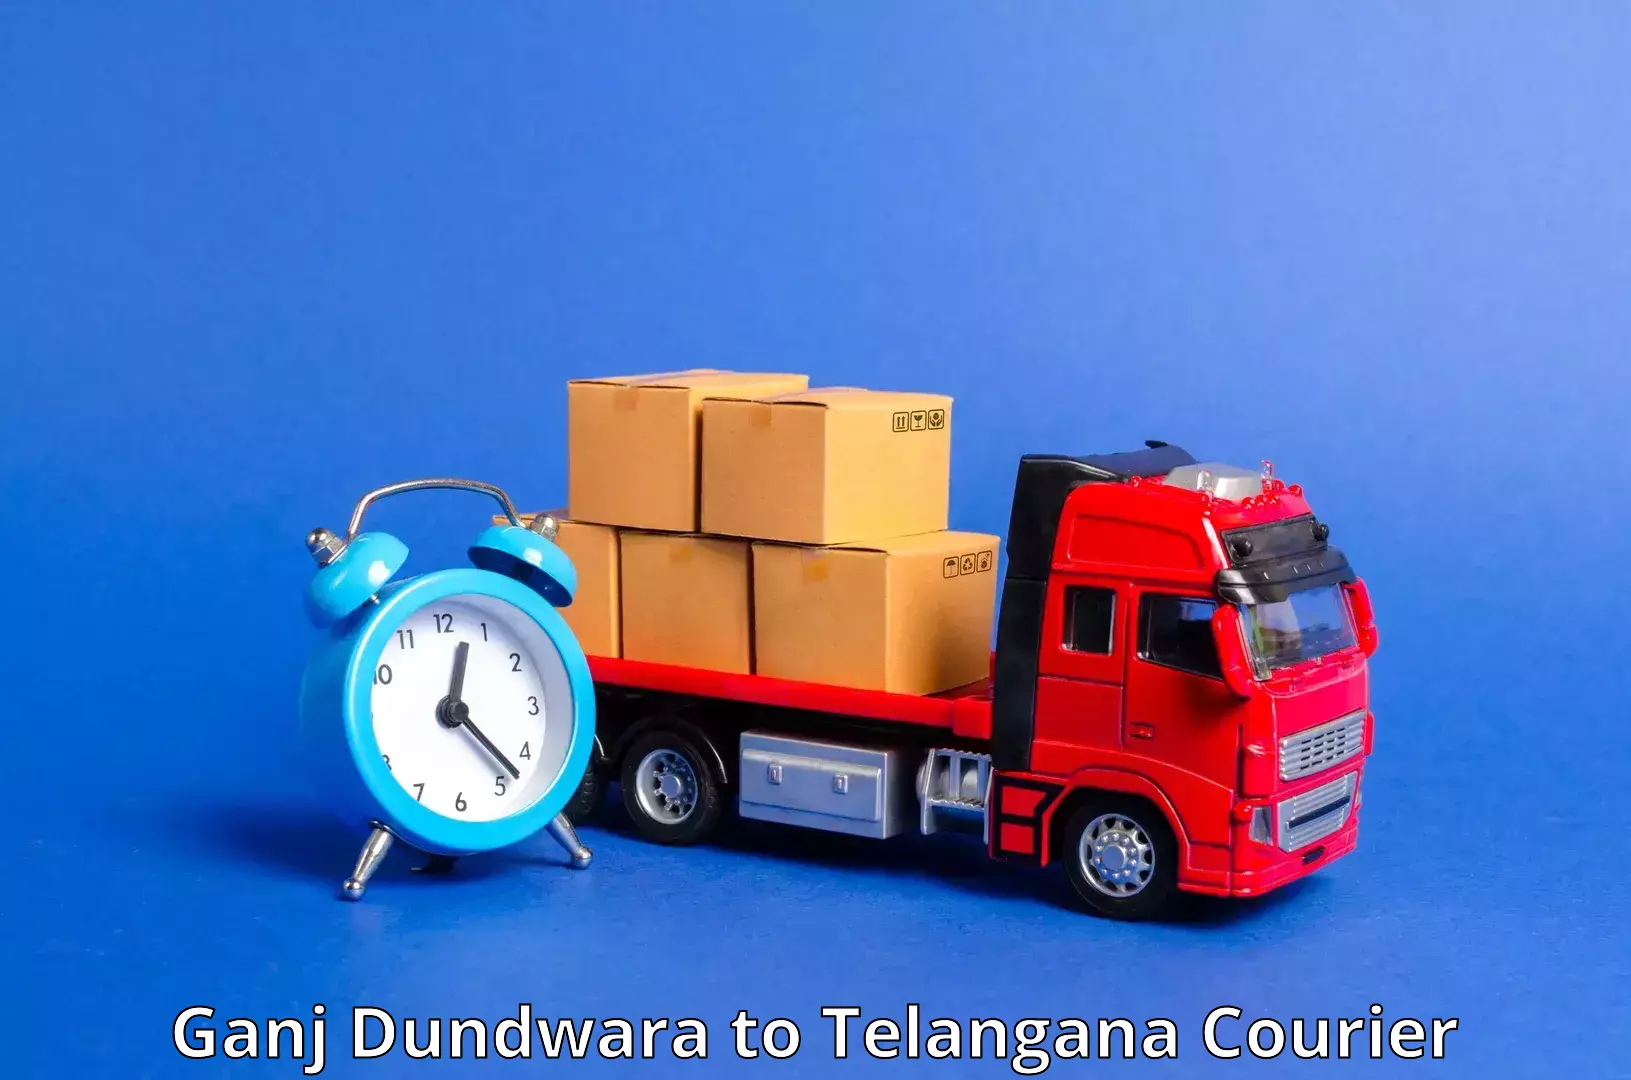 Tailored shipping plans Ganj Dundwara to Banswada